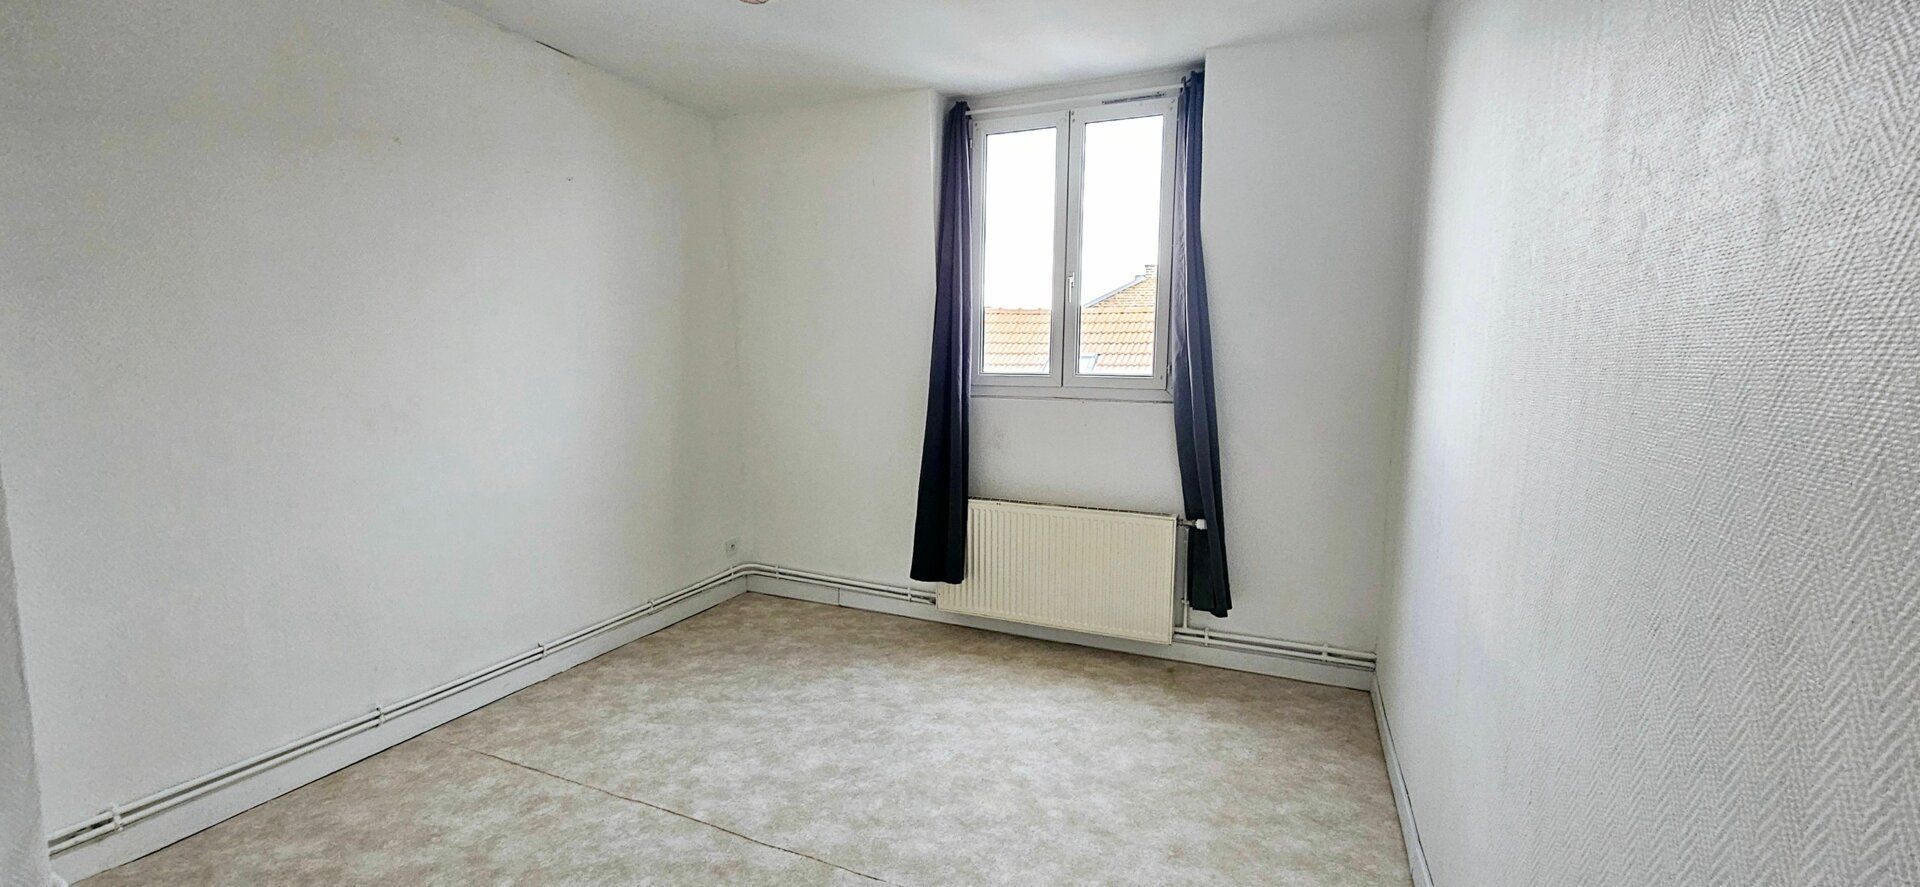 Appartement à louer 2 61.92m2 à Saint-Quentin vignette-7